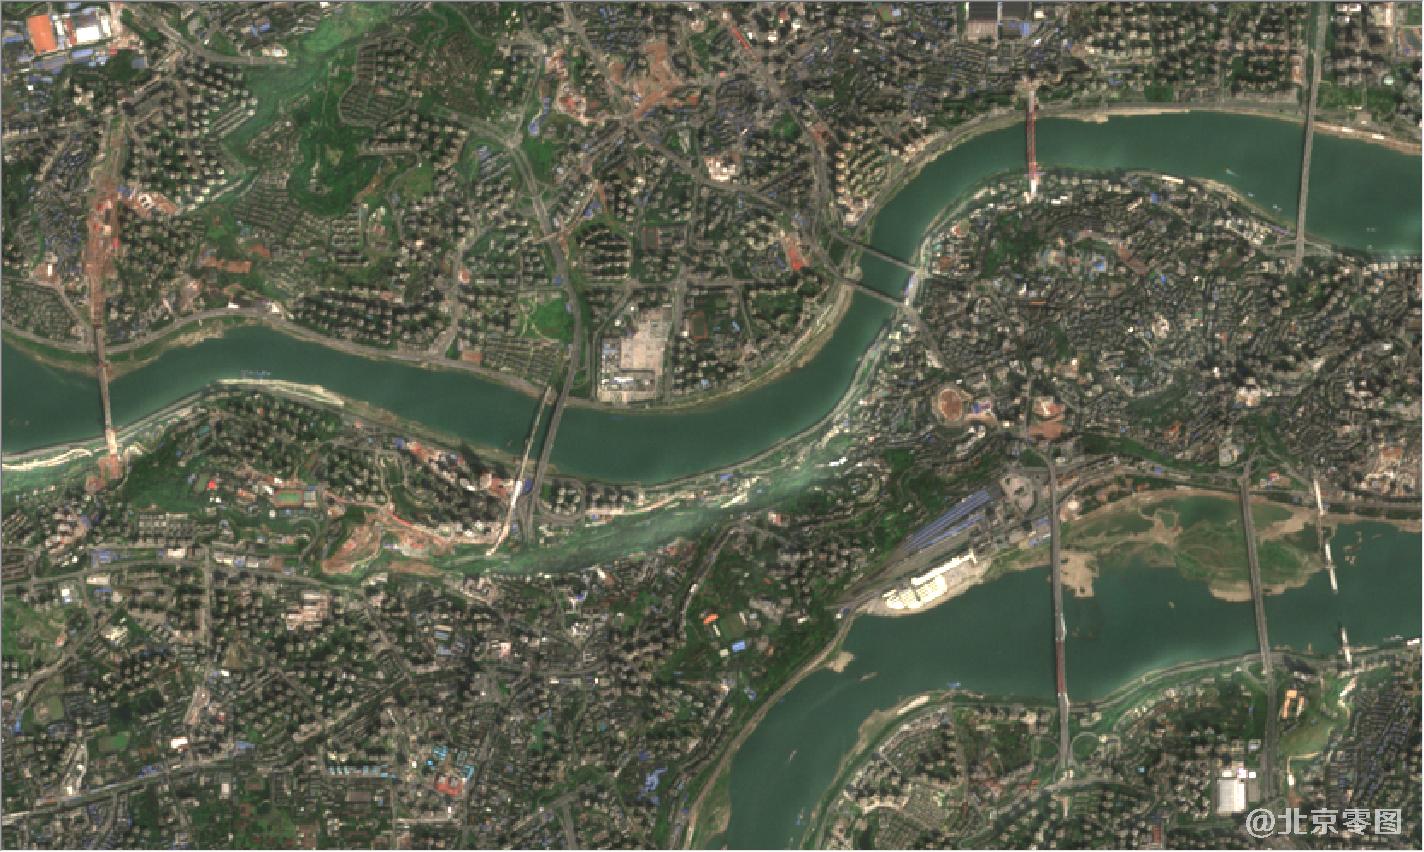 卫星地图由高频监测卫星拍摄于2021年3月24日,如需要购买重庆市高清